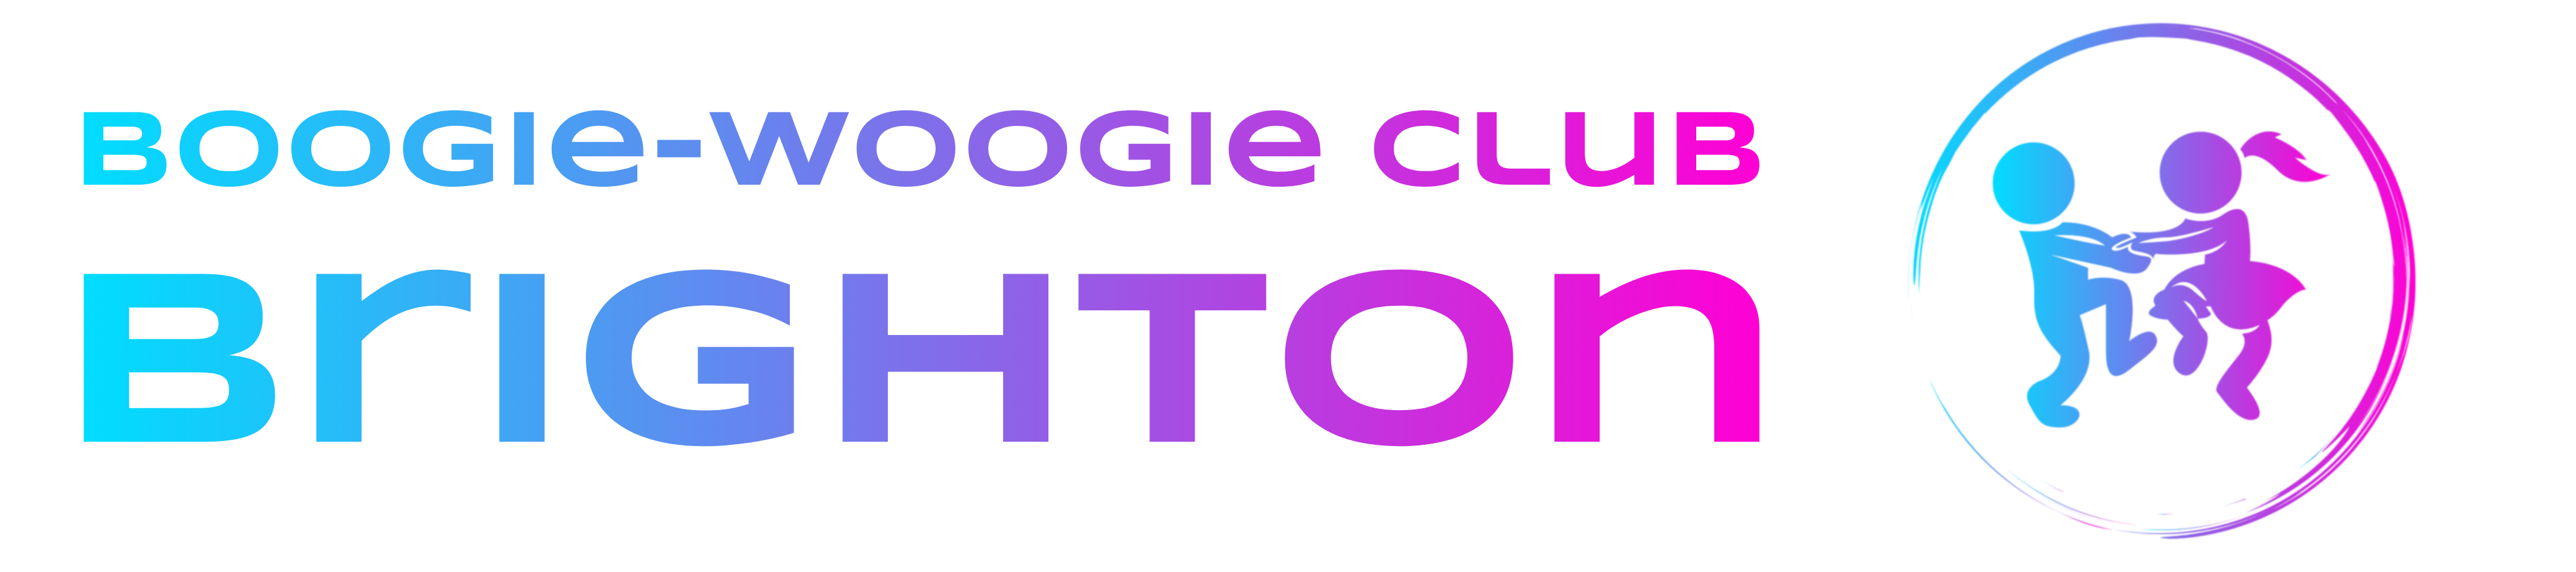 Boogie-Woogie Club